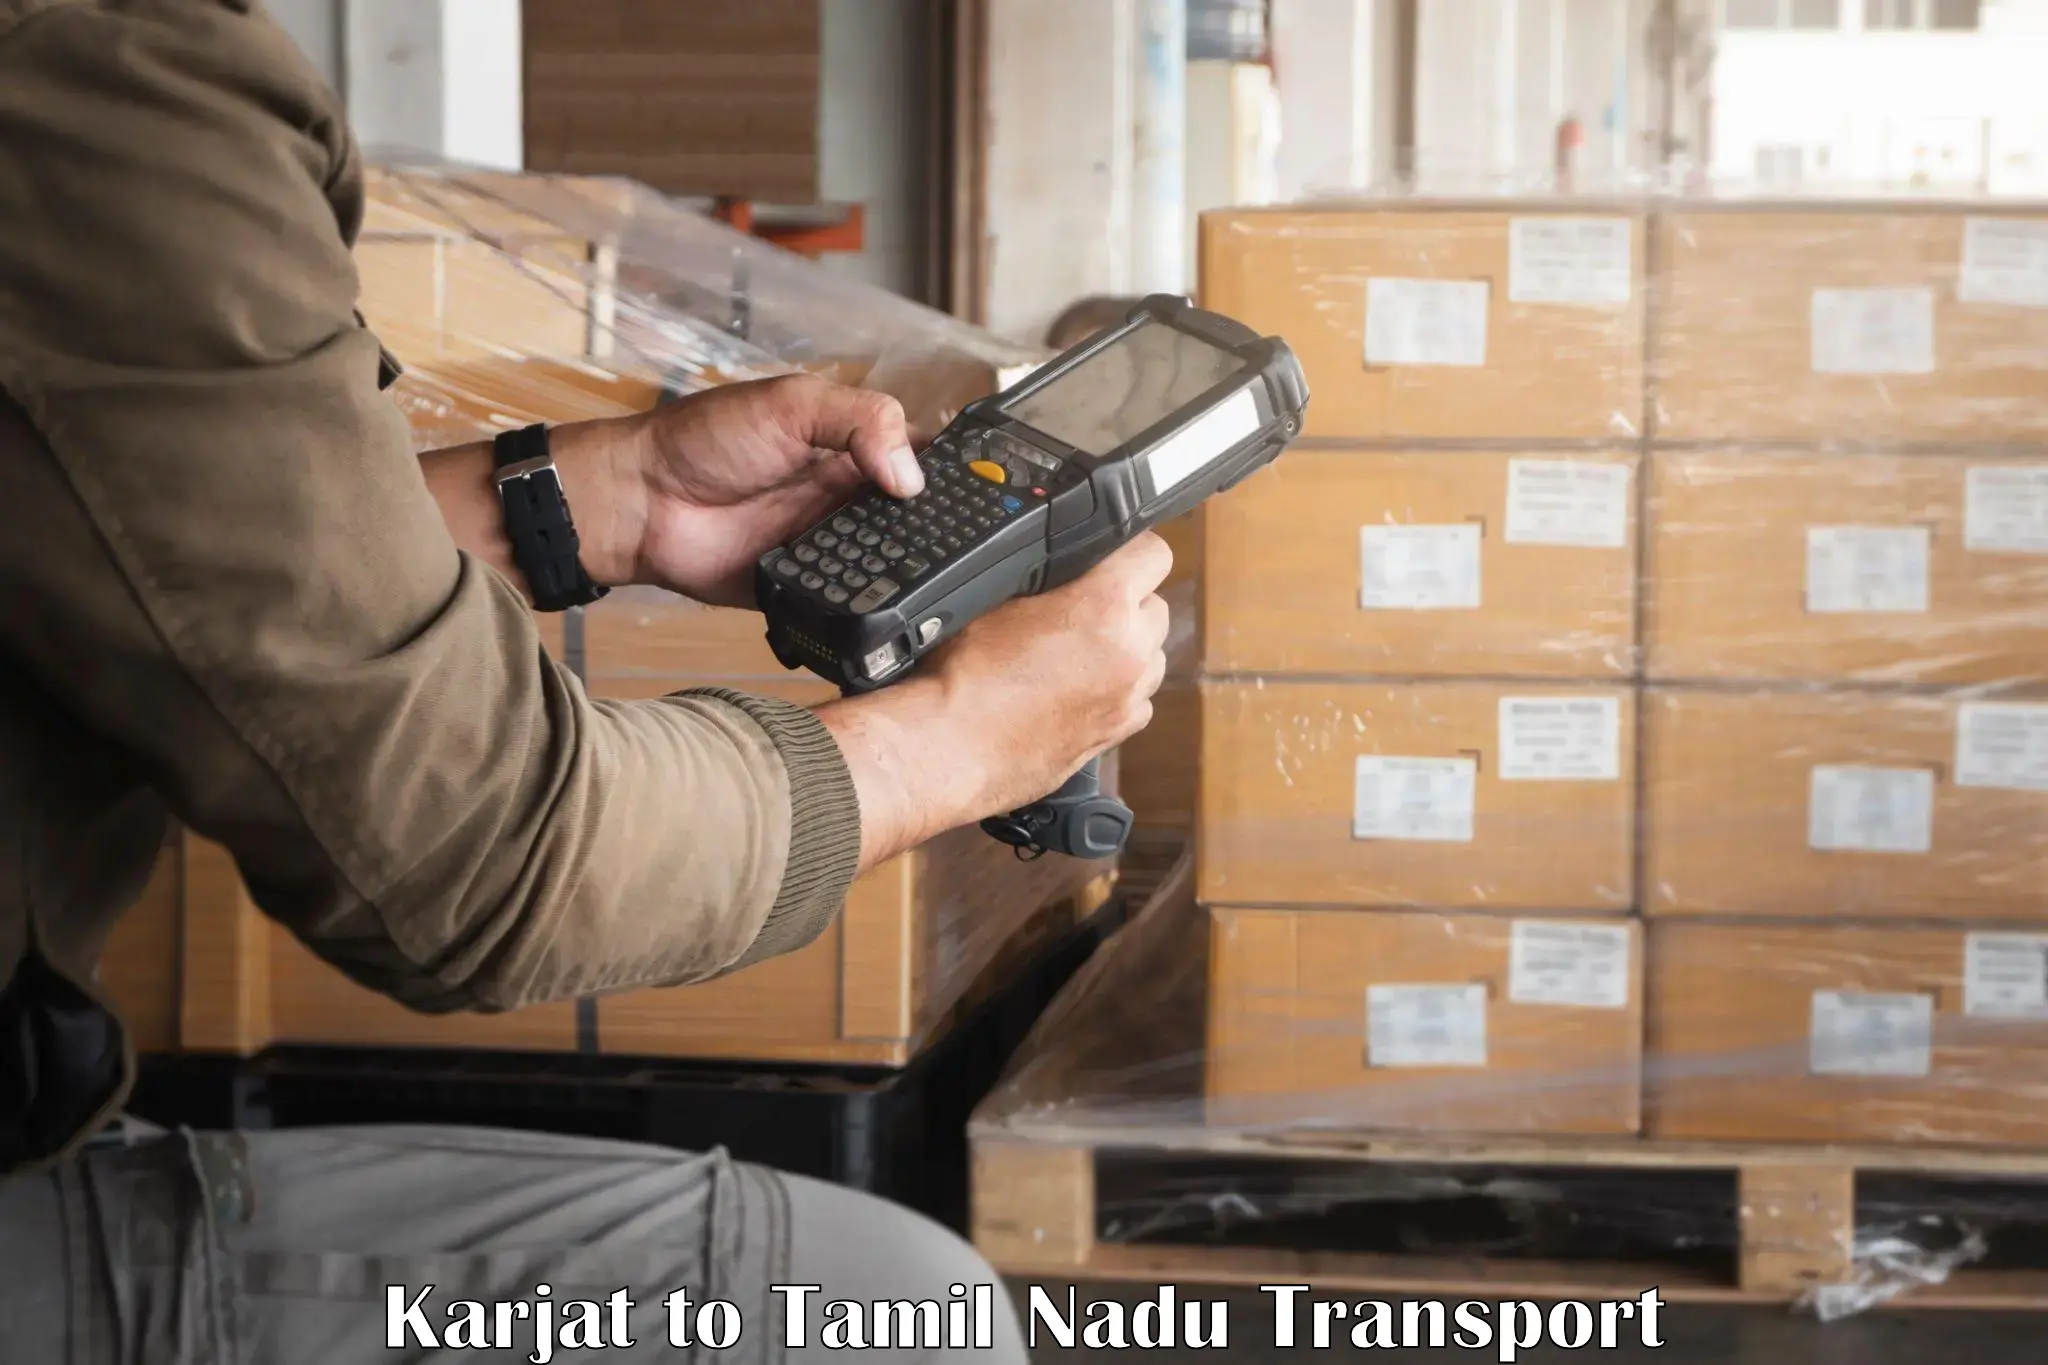 Interstate transport services Karjat to Sivakasi